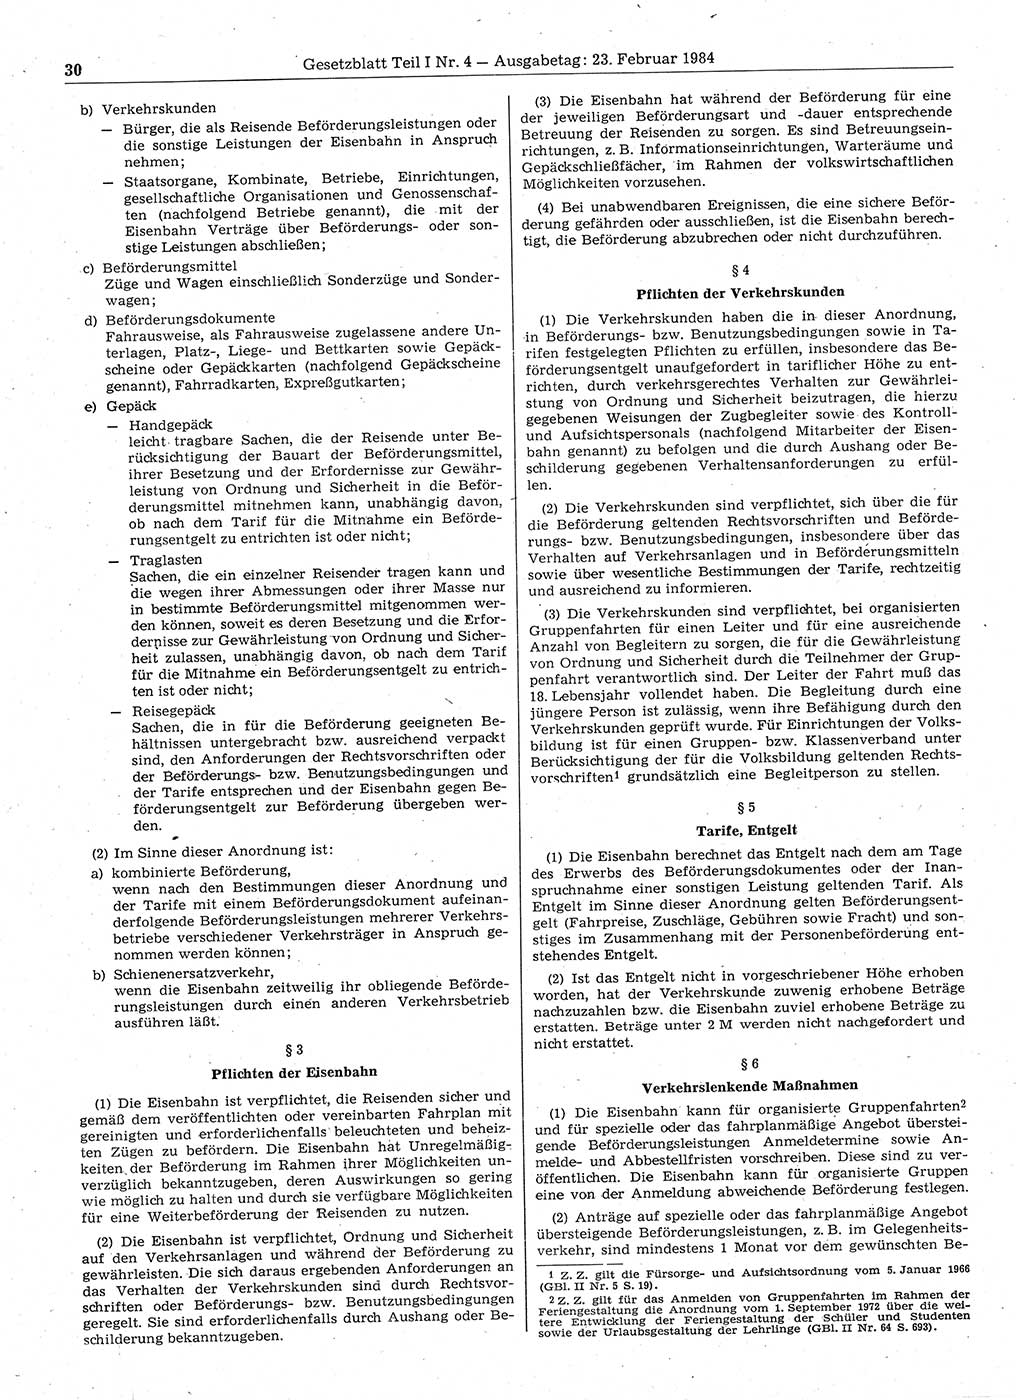 Gesetzblatt (GBl.) der Deutschen Demokratischen Republik (DDR) Teil Ⅰ 1984, Seite 30 (GBl. DDR Ⅰ 1984, S. 30)